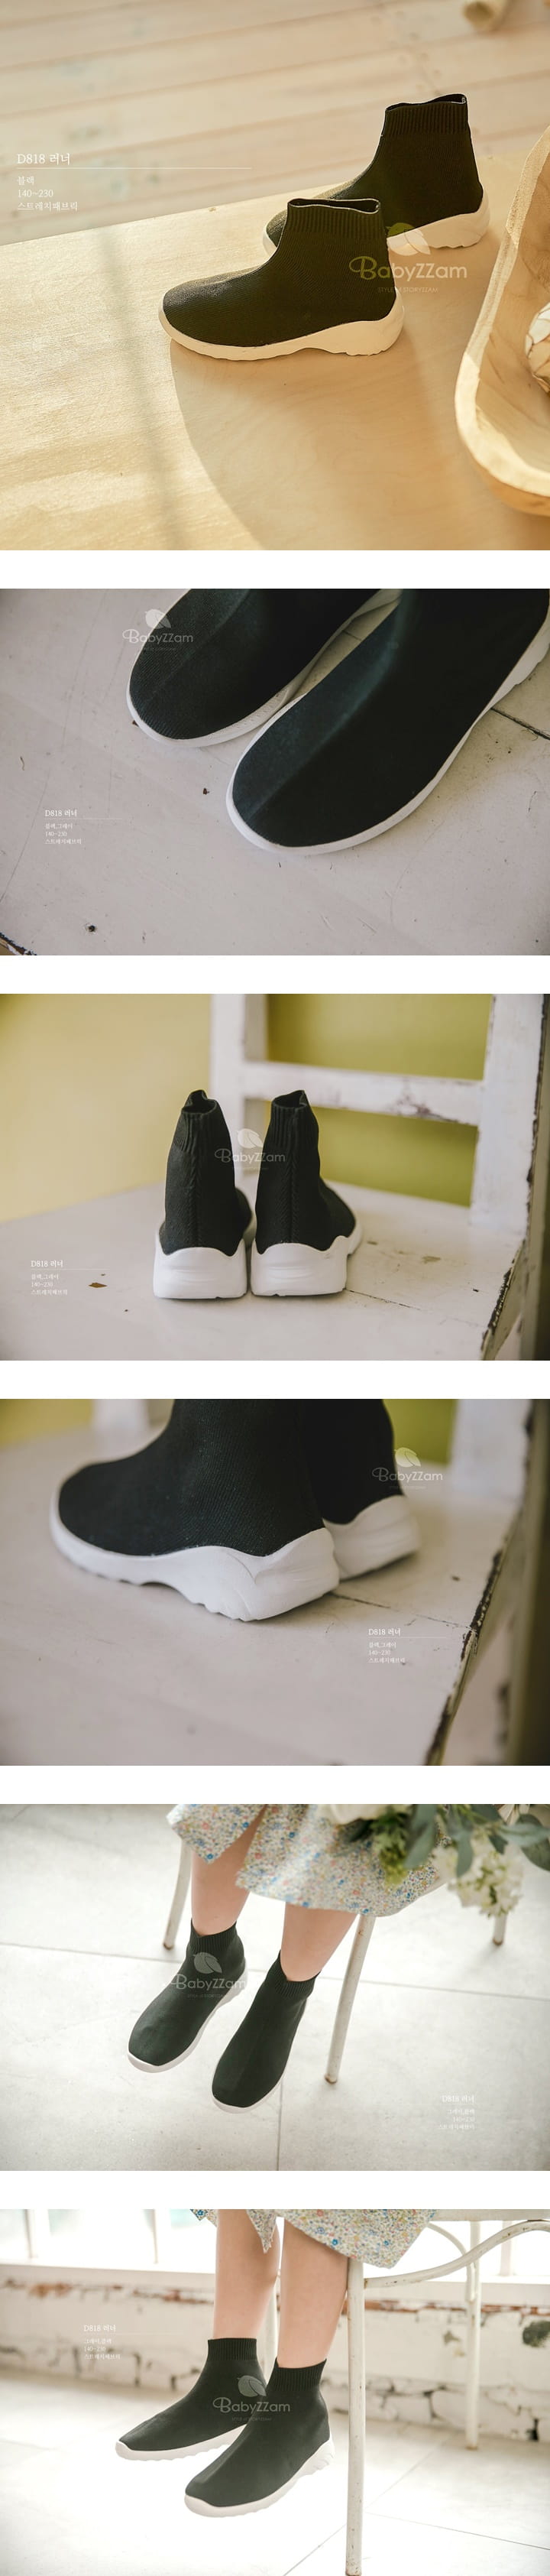 Babyzzam - Korean Children Fashion - #littlefashionista - D818 Boots